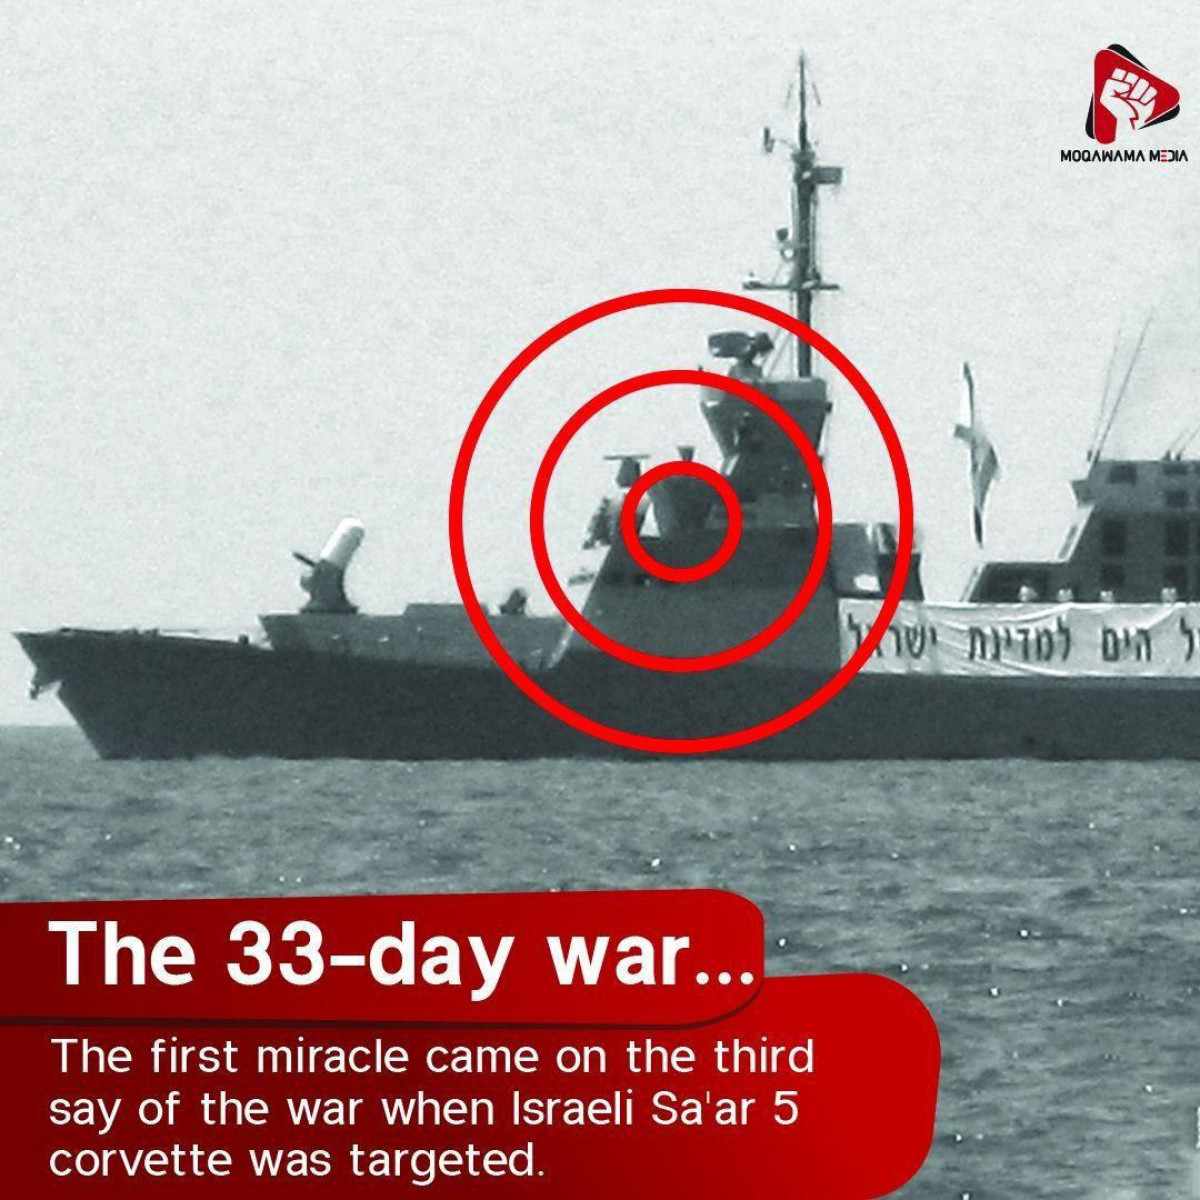 The 33-day war ...